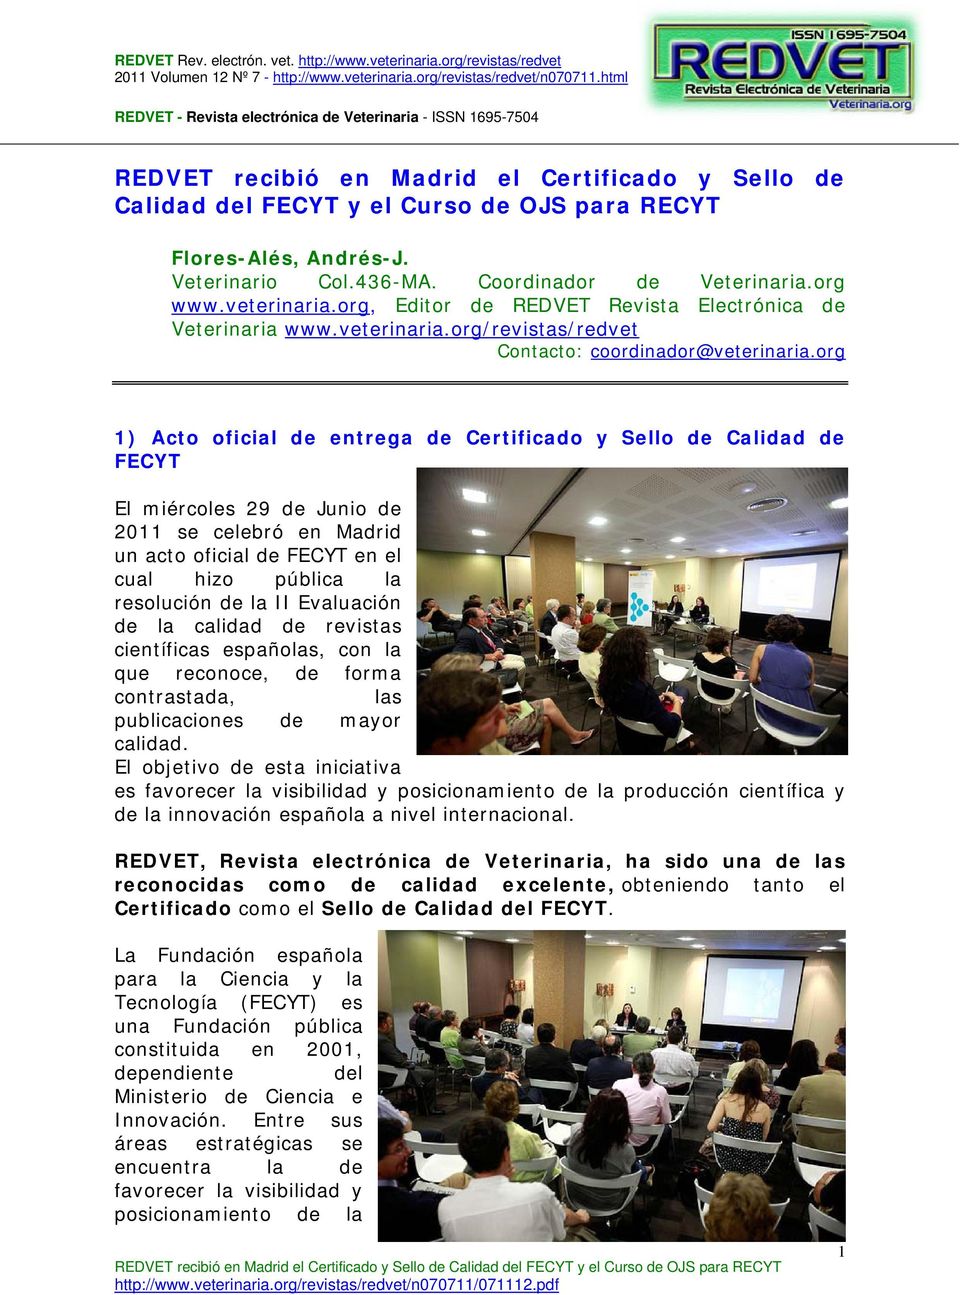 org 1) Acto oficial de entrega de Certificado y Sello de Calidad de FECYT El miércoles 29 de Junio de 2011 se celebró en Madrid un acto oficial de FECYT en el cual hizo pública la resolución de la II